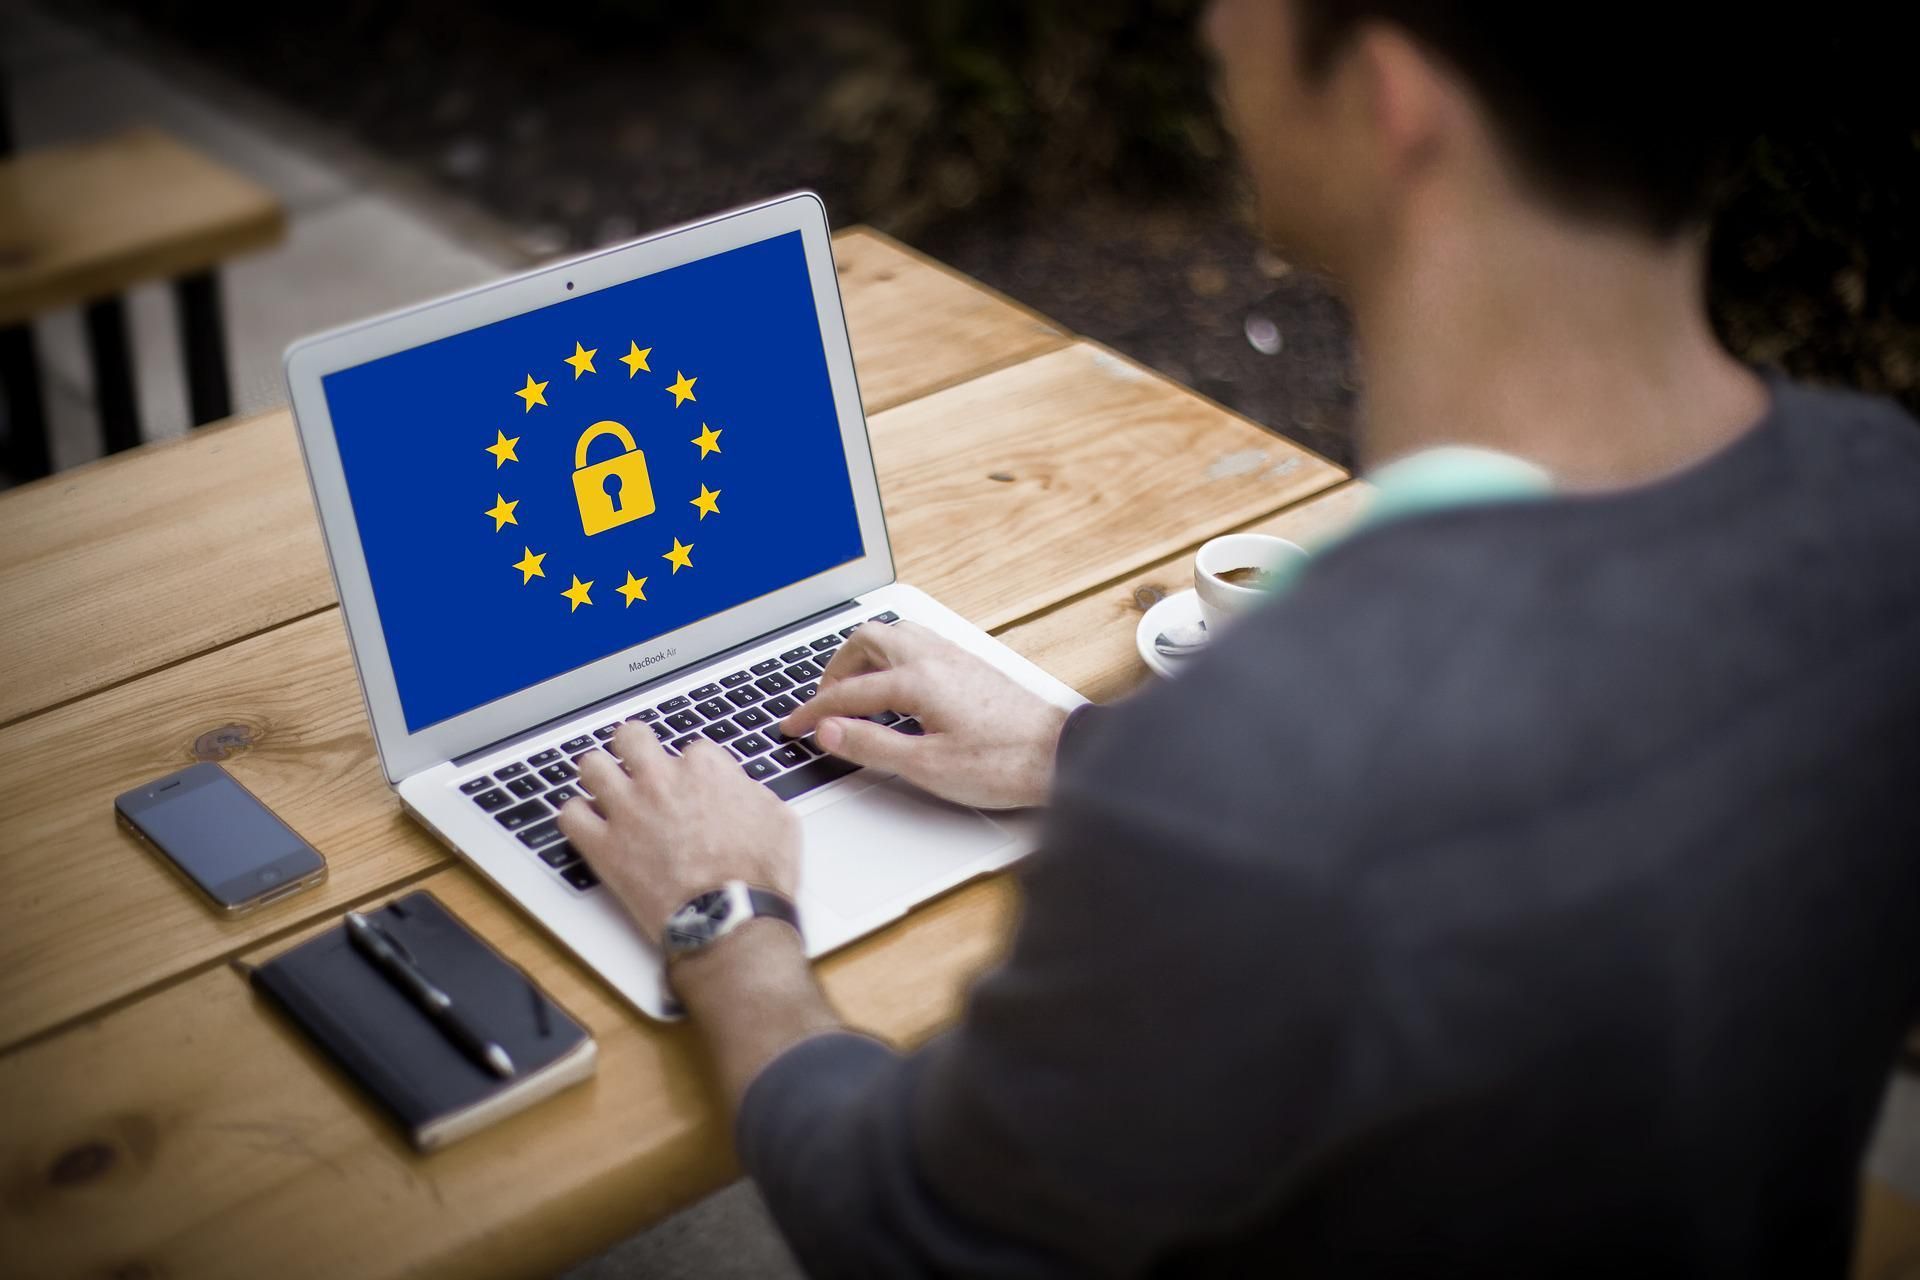 Општата регулатива за заштита на податоци (на англиски GDPR е акроним Општа регулатива за заштита на податоци), официјално Регулатива (ЕУ) број 2016/679, е регулатива на Европската унија во врска со обработката на личните податоци и приватноста, усвоена на 27 април 2016 година